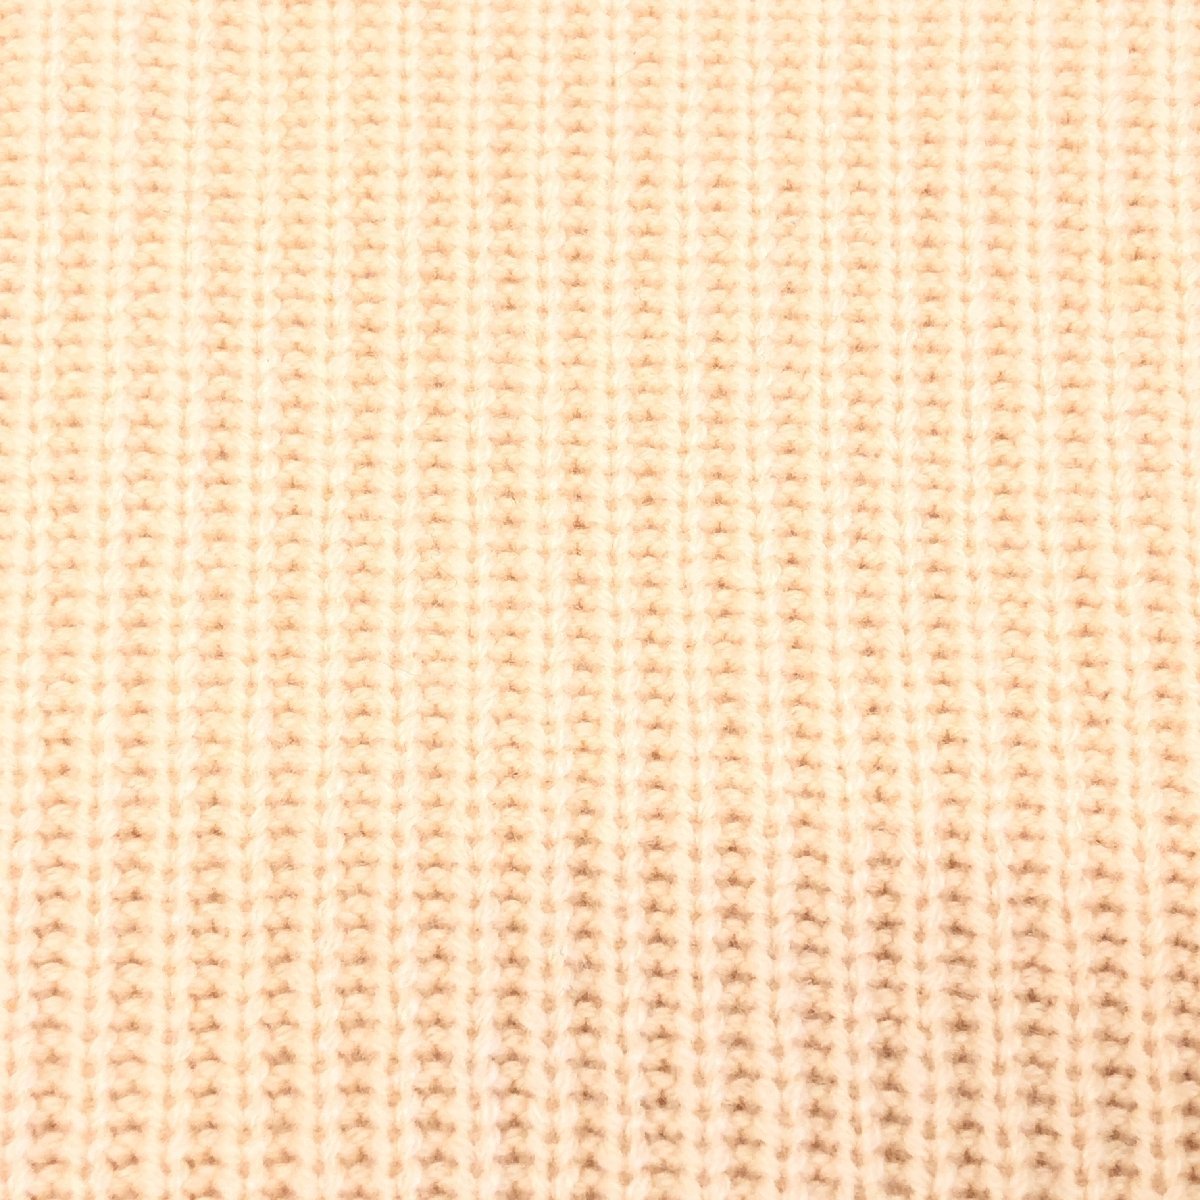 ●PURE CASHMERE クルーネック ピュアカシミア100% ニット セーター 9(M) サーモンピンク カシミア 日本製 国内正規品 レディース 婦人の画像5